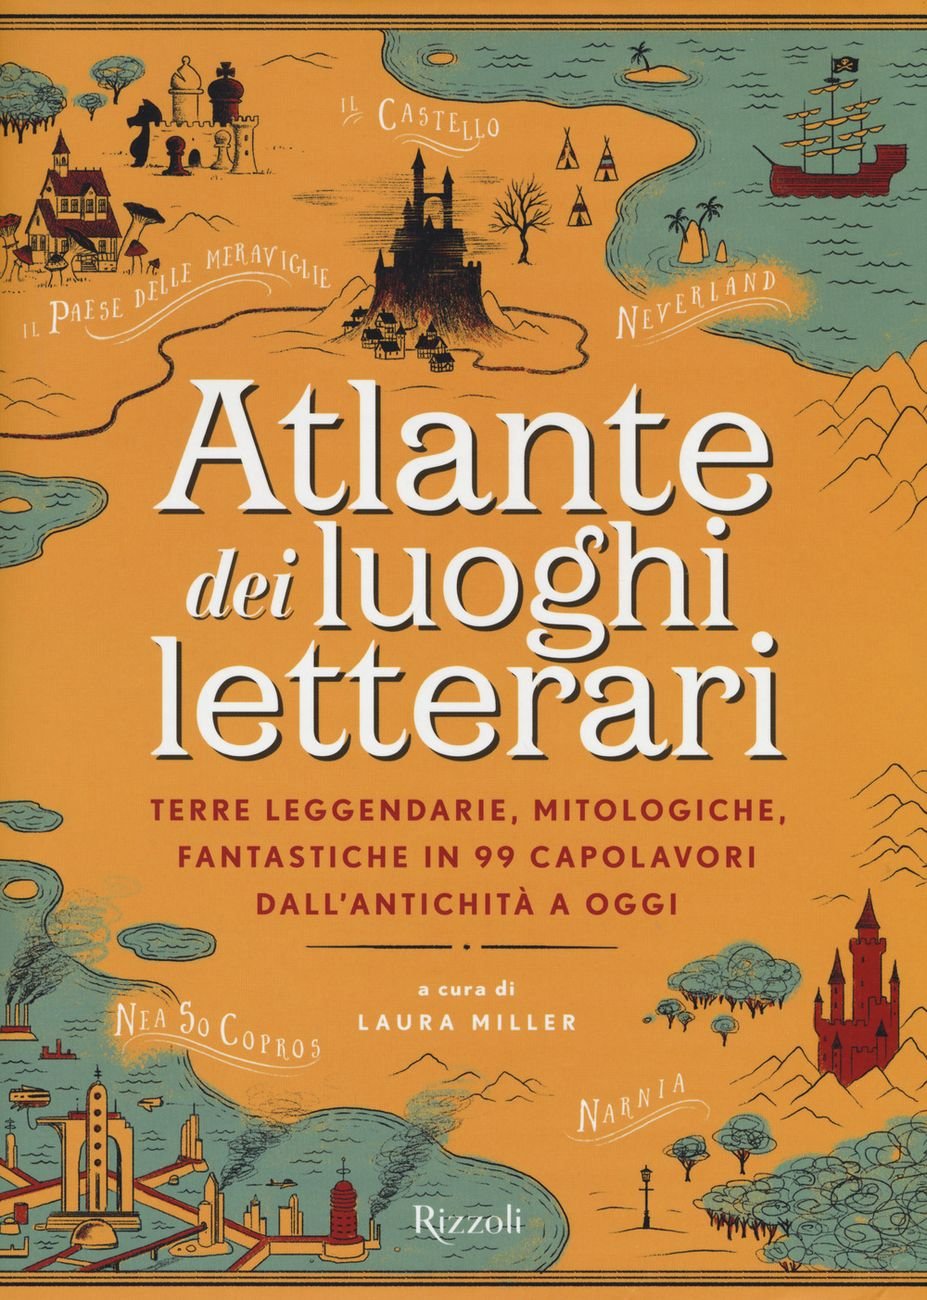 Laura Miller (a cura di) – Atlante dei luoghi letterari (Rizzoli, Milano 2018)